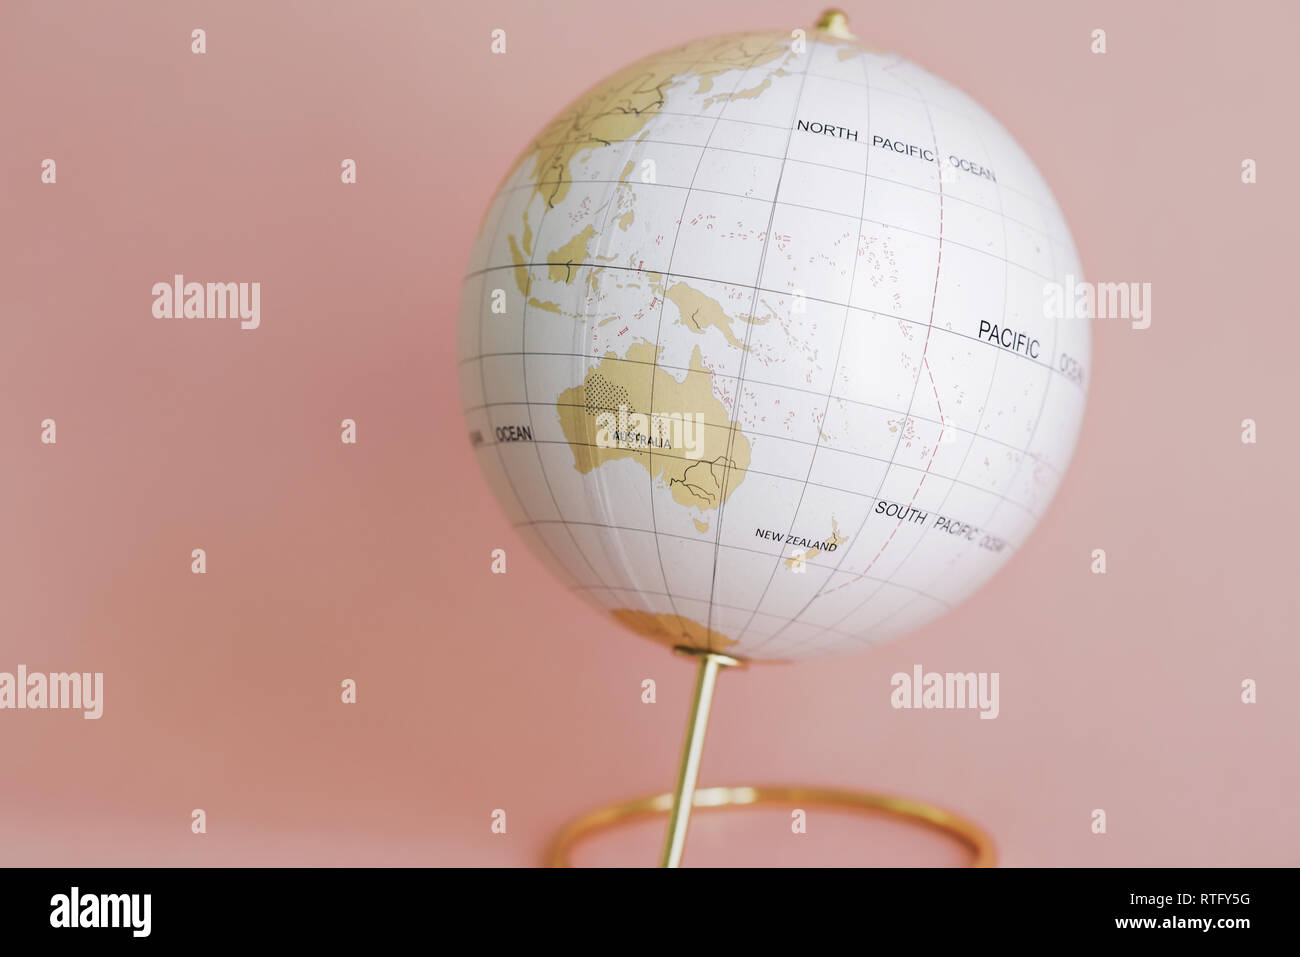 Globus auf Pfirsich Farbe zeigen, Australien und Südostasien Stockfoto